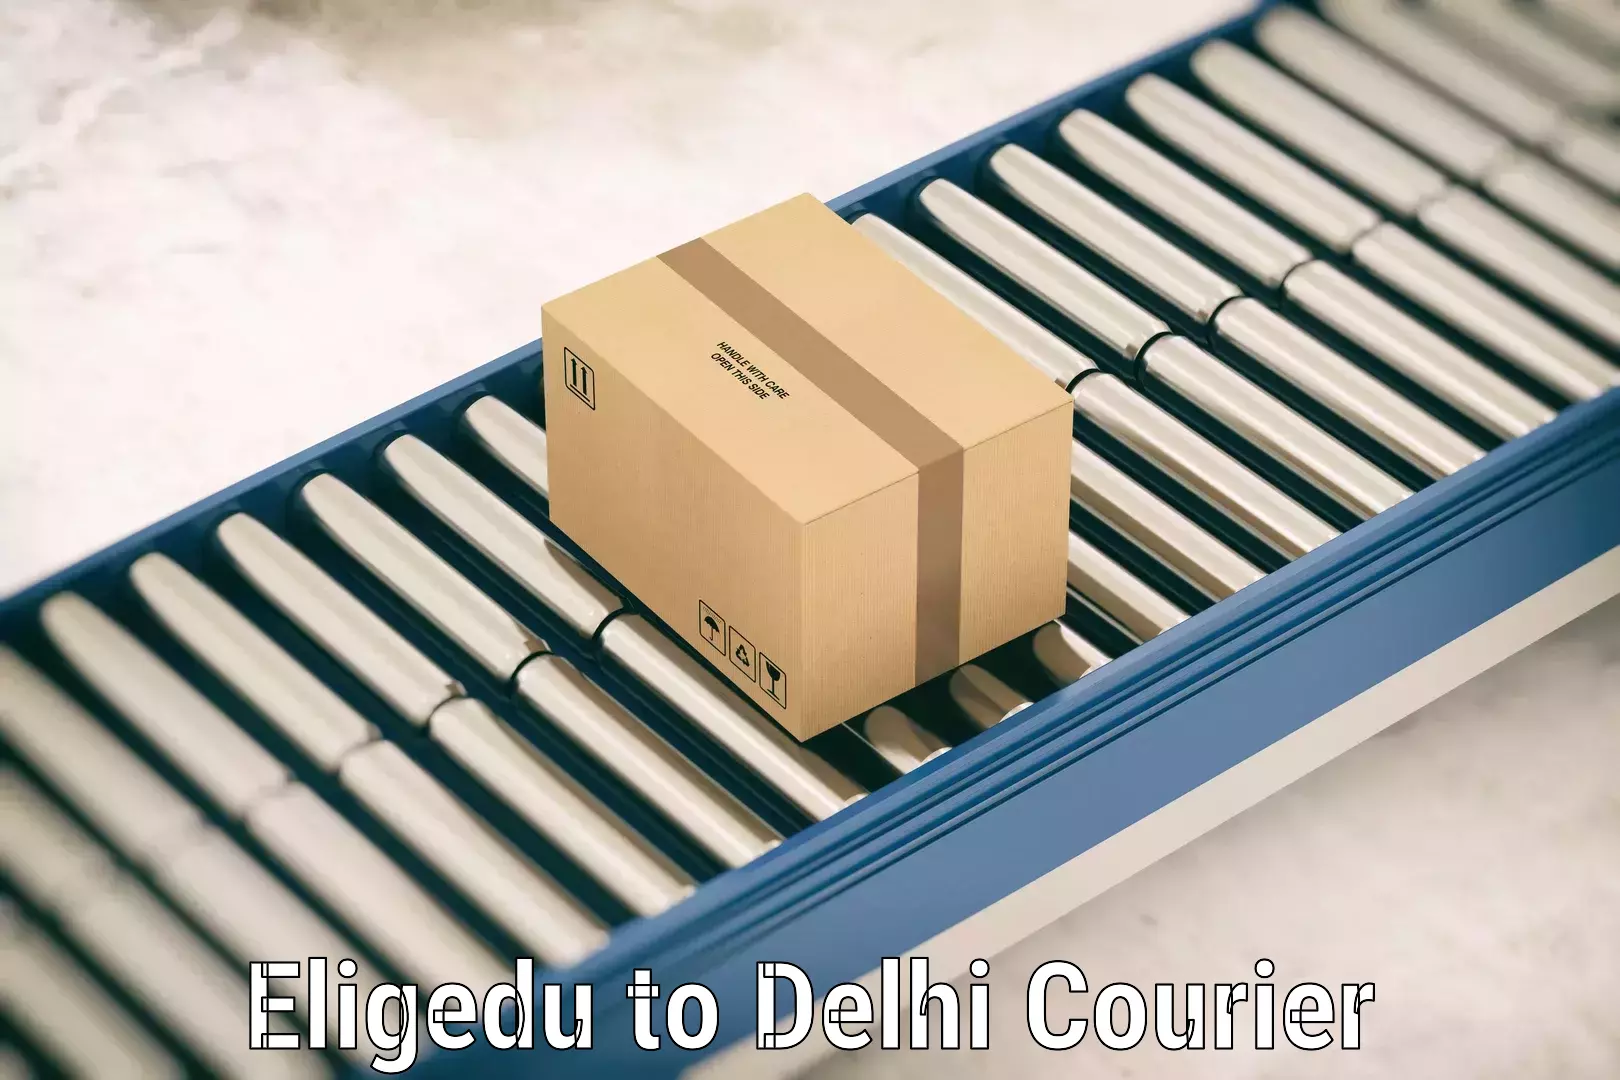 Baggage delivery optimization in Eligedu to Delhi Technological University DTU